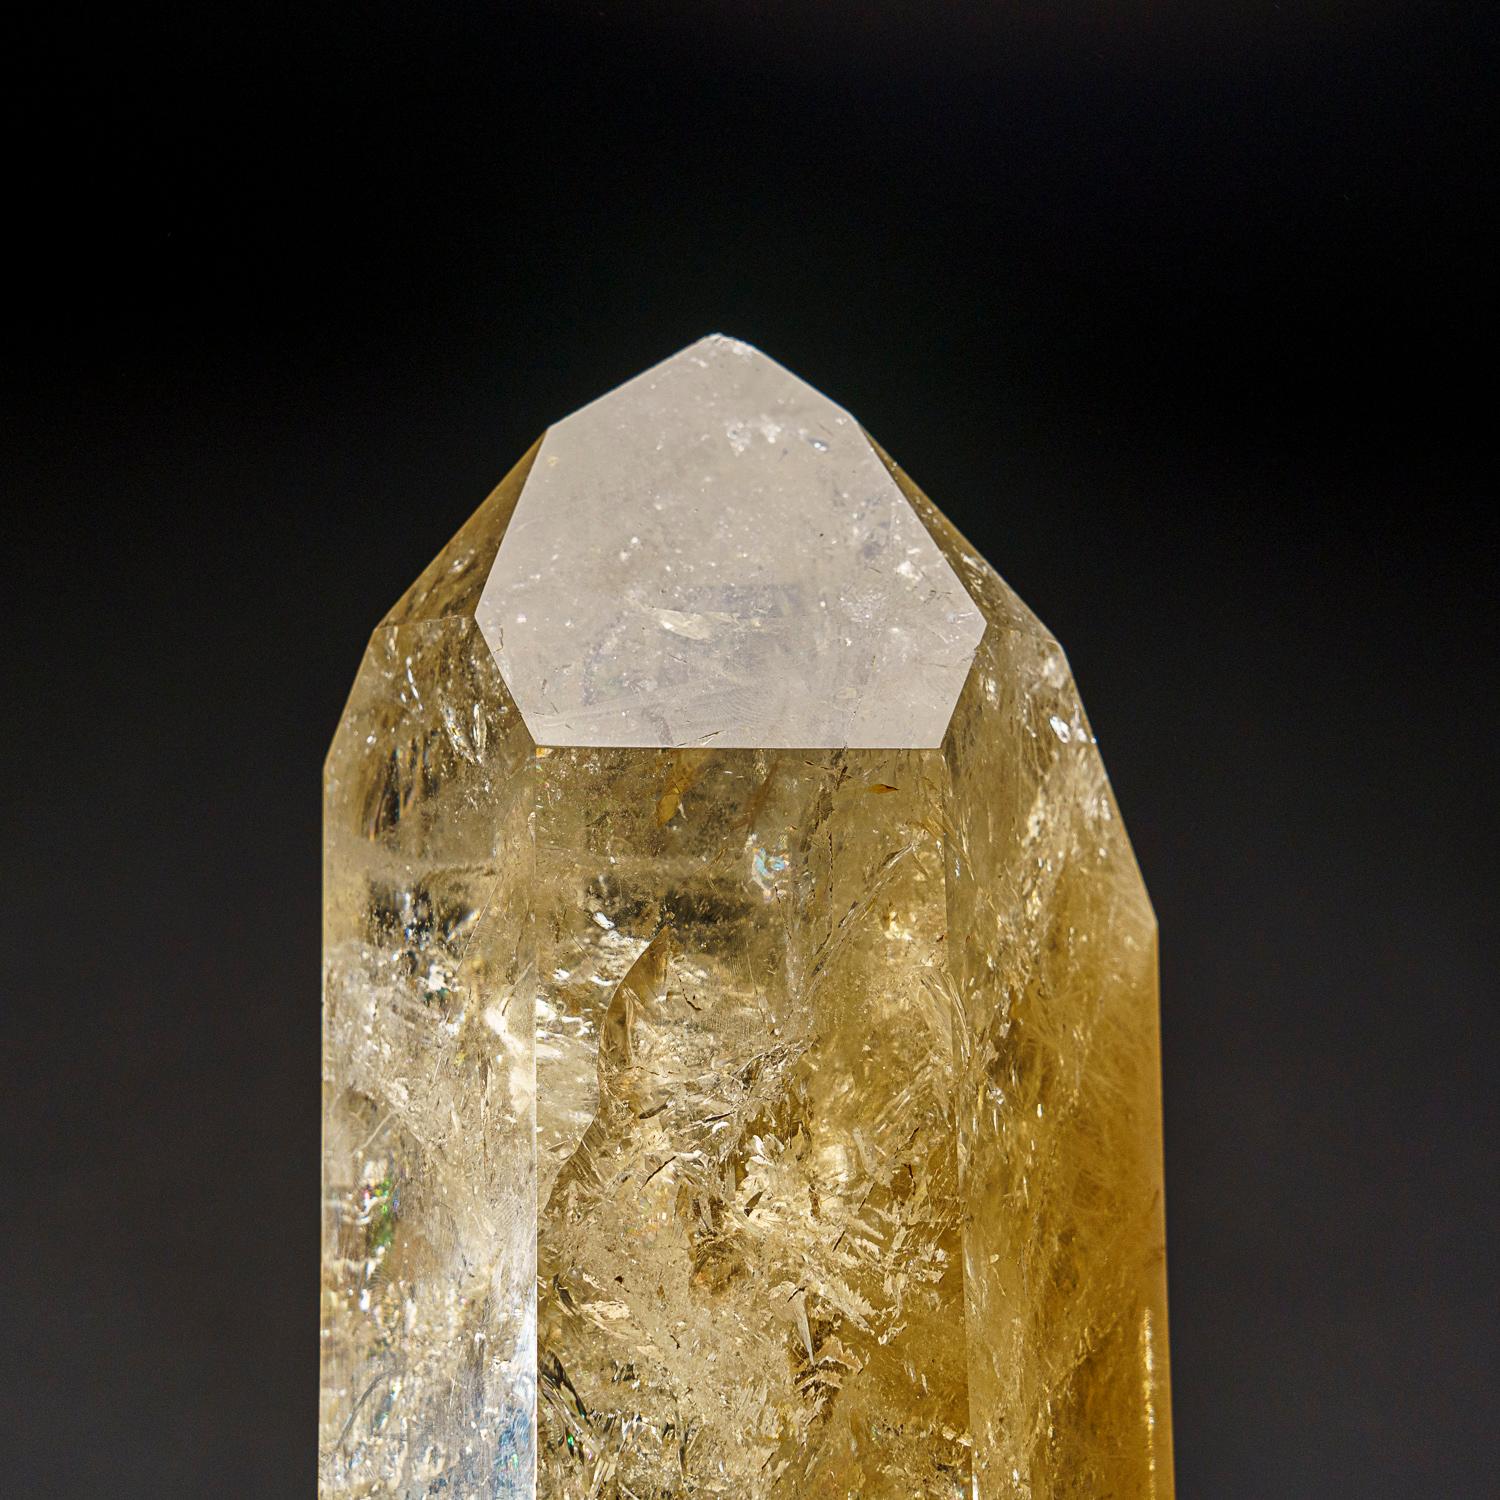 Grand cristal de quartz citrine transparent avec inclusions de rutile, de qualité muséale. Cette pointe de classe mondiale est extrêmement grande, avec un lustre de premier ordre et une excellente couleur naturelle jaune fumé, à l'intérieur ce